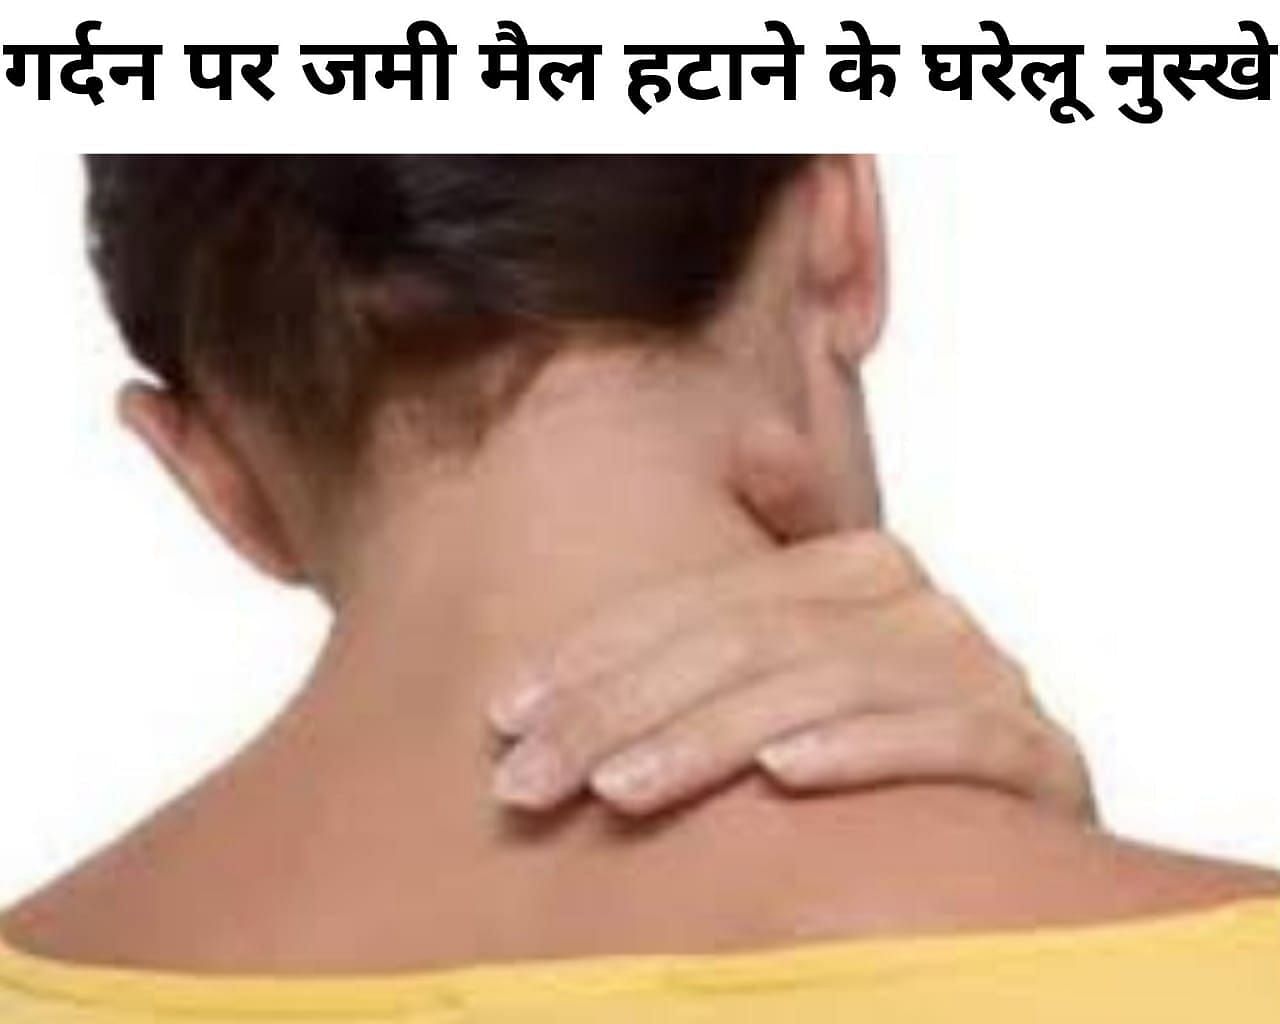 गर्दन पर जमी मैल हटाने के घरेलू नुस्खे (फोटो - sportskeeda hindi)